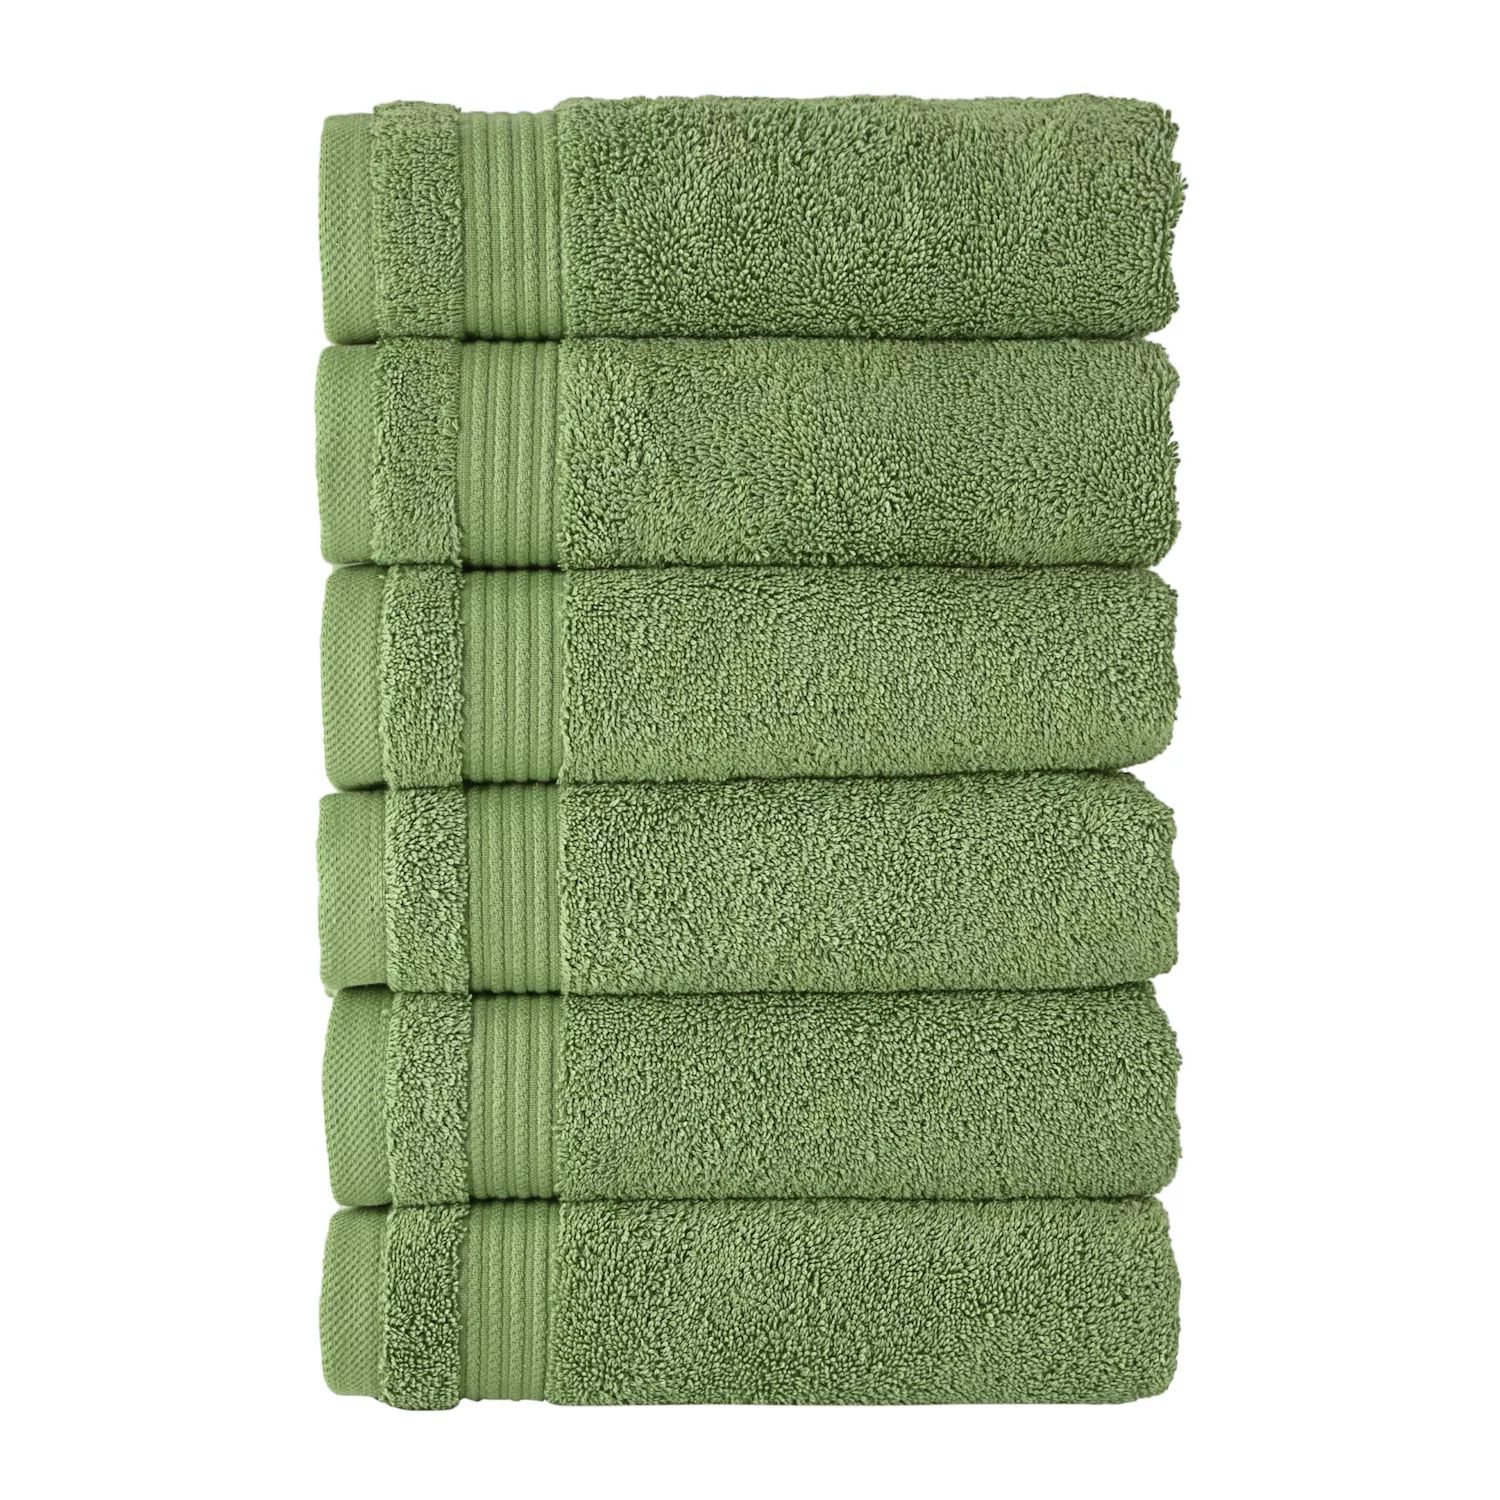 Классические турецкие полотенца из натурального хлопка, мягкие впитывающие полотенца Amadeus, набор из 6 предметов 16x27